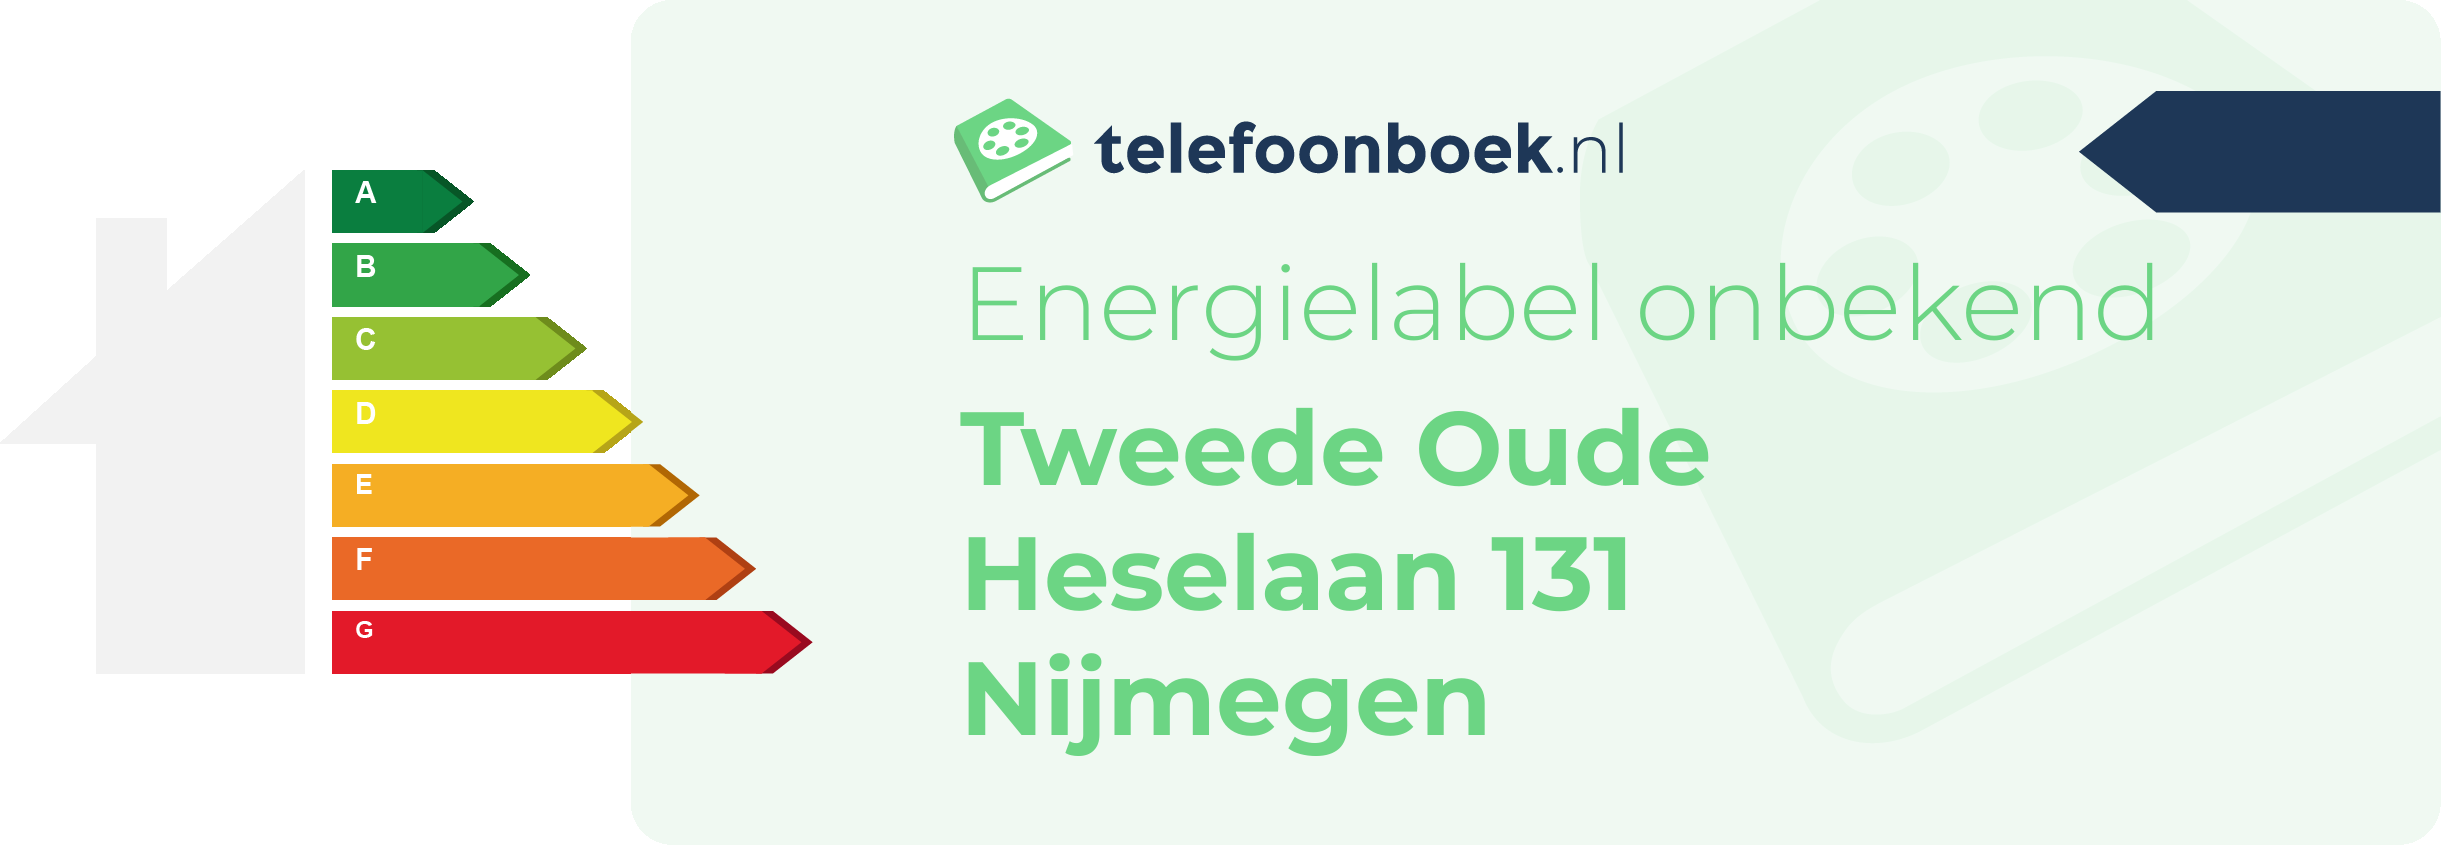 Energielabel Tweede Oude Heselaan 131 Nijmegen